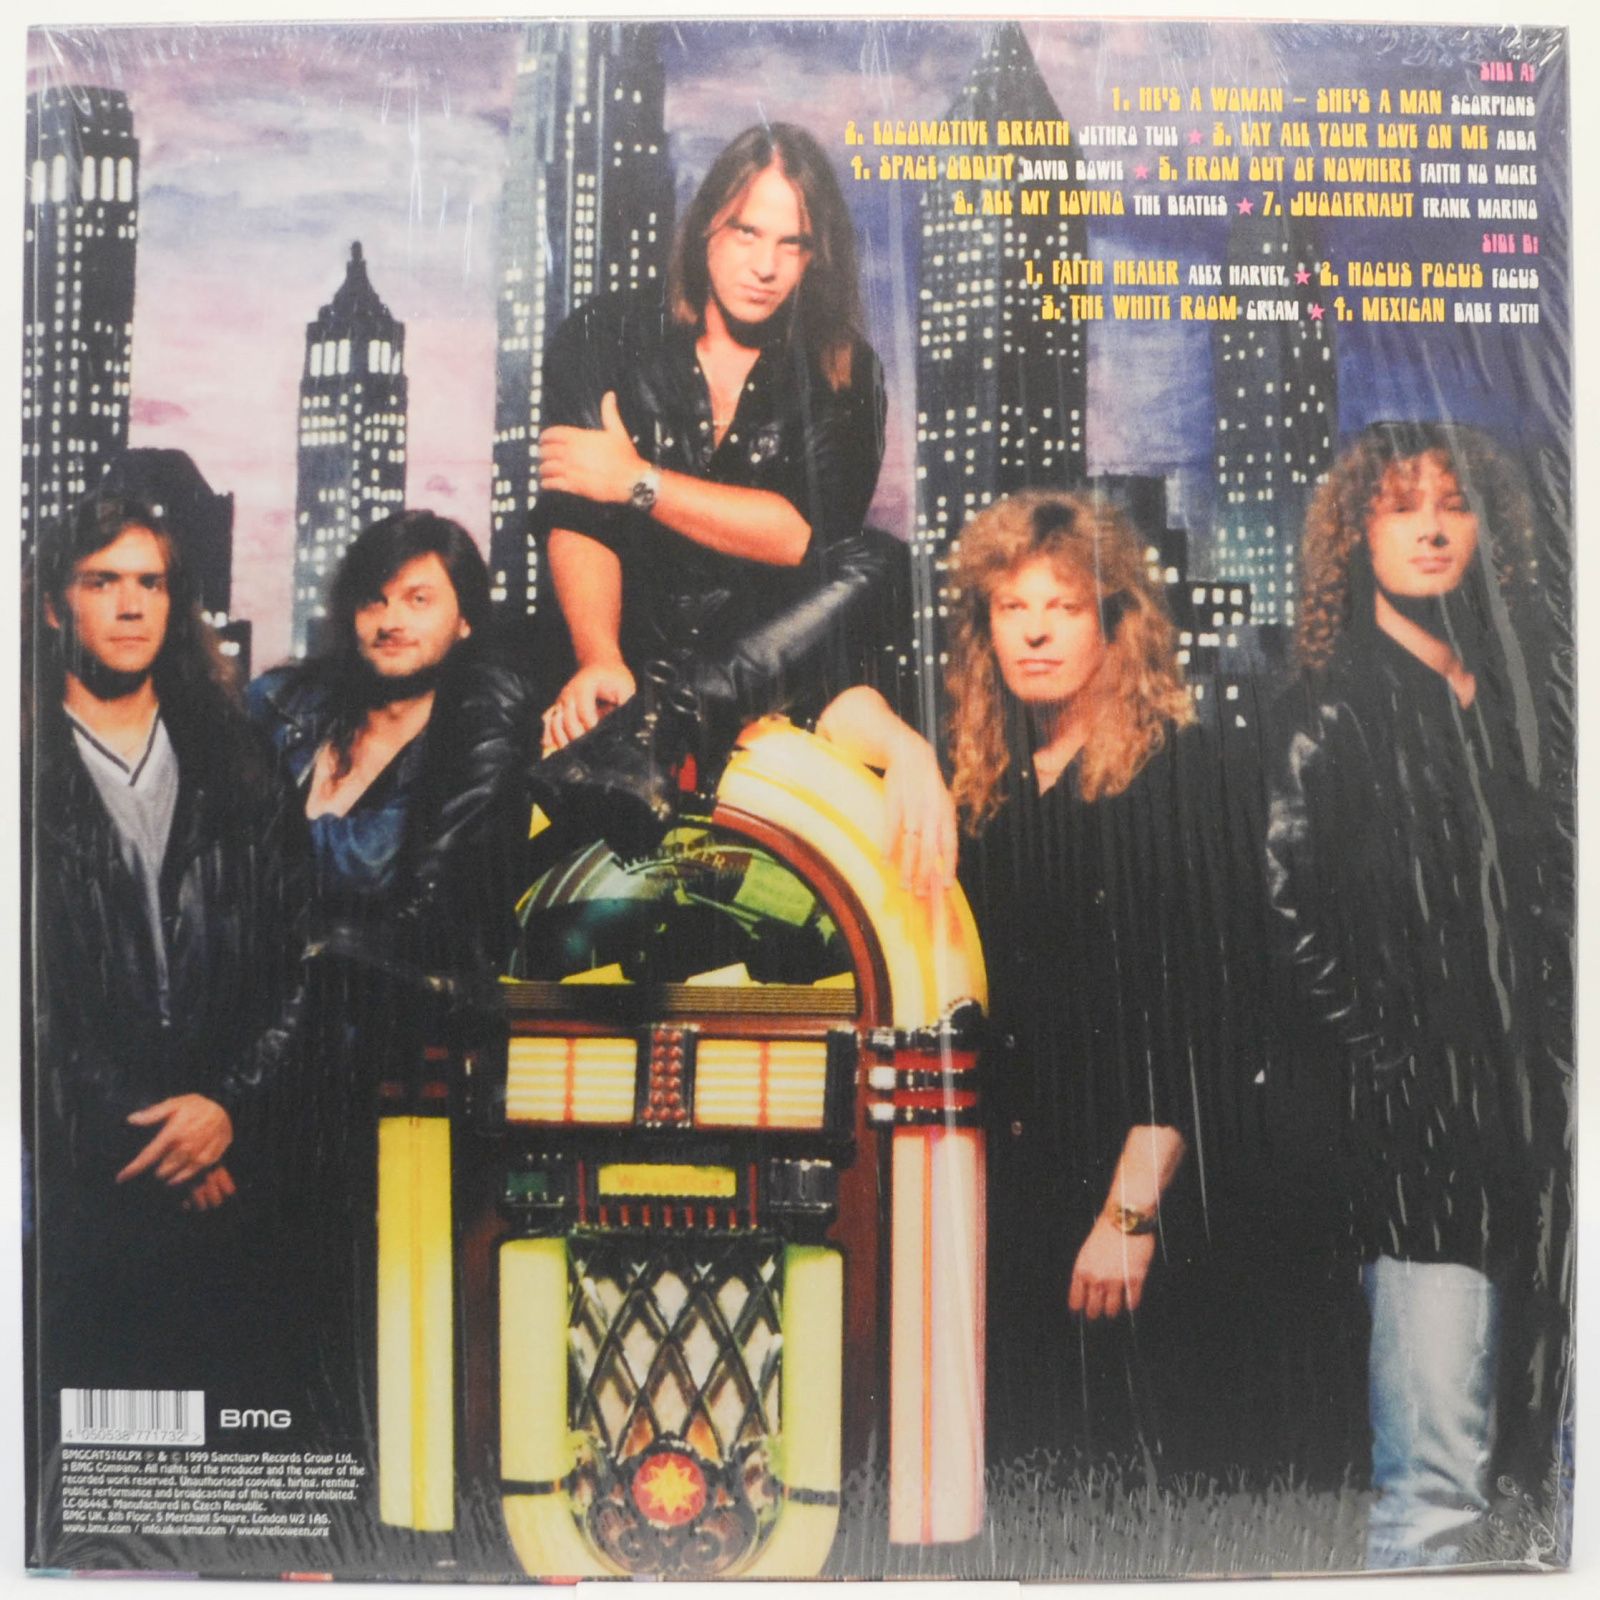 Helloween — Metal Jukebox, 1999